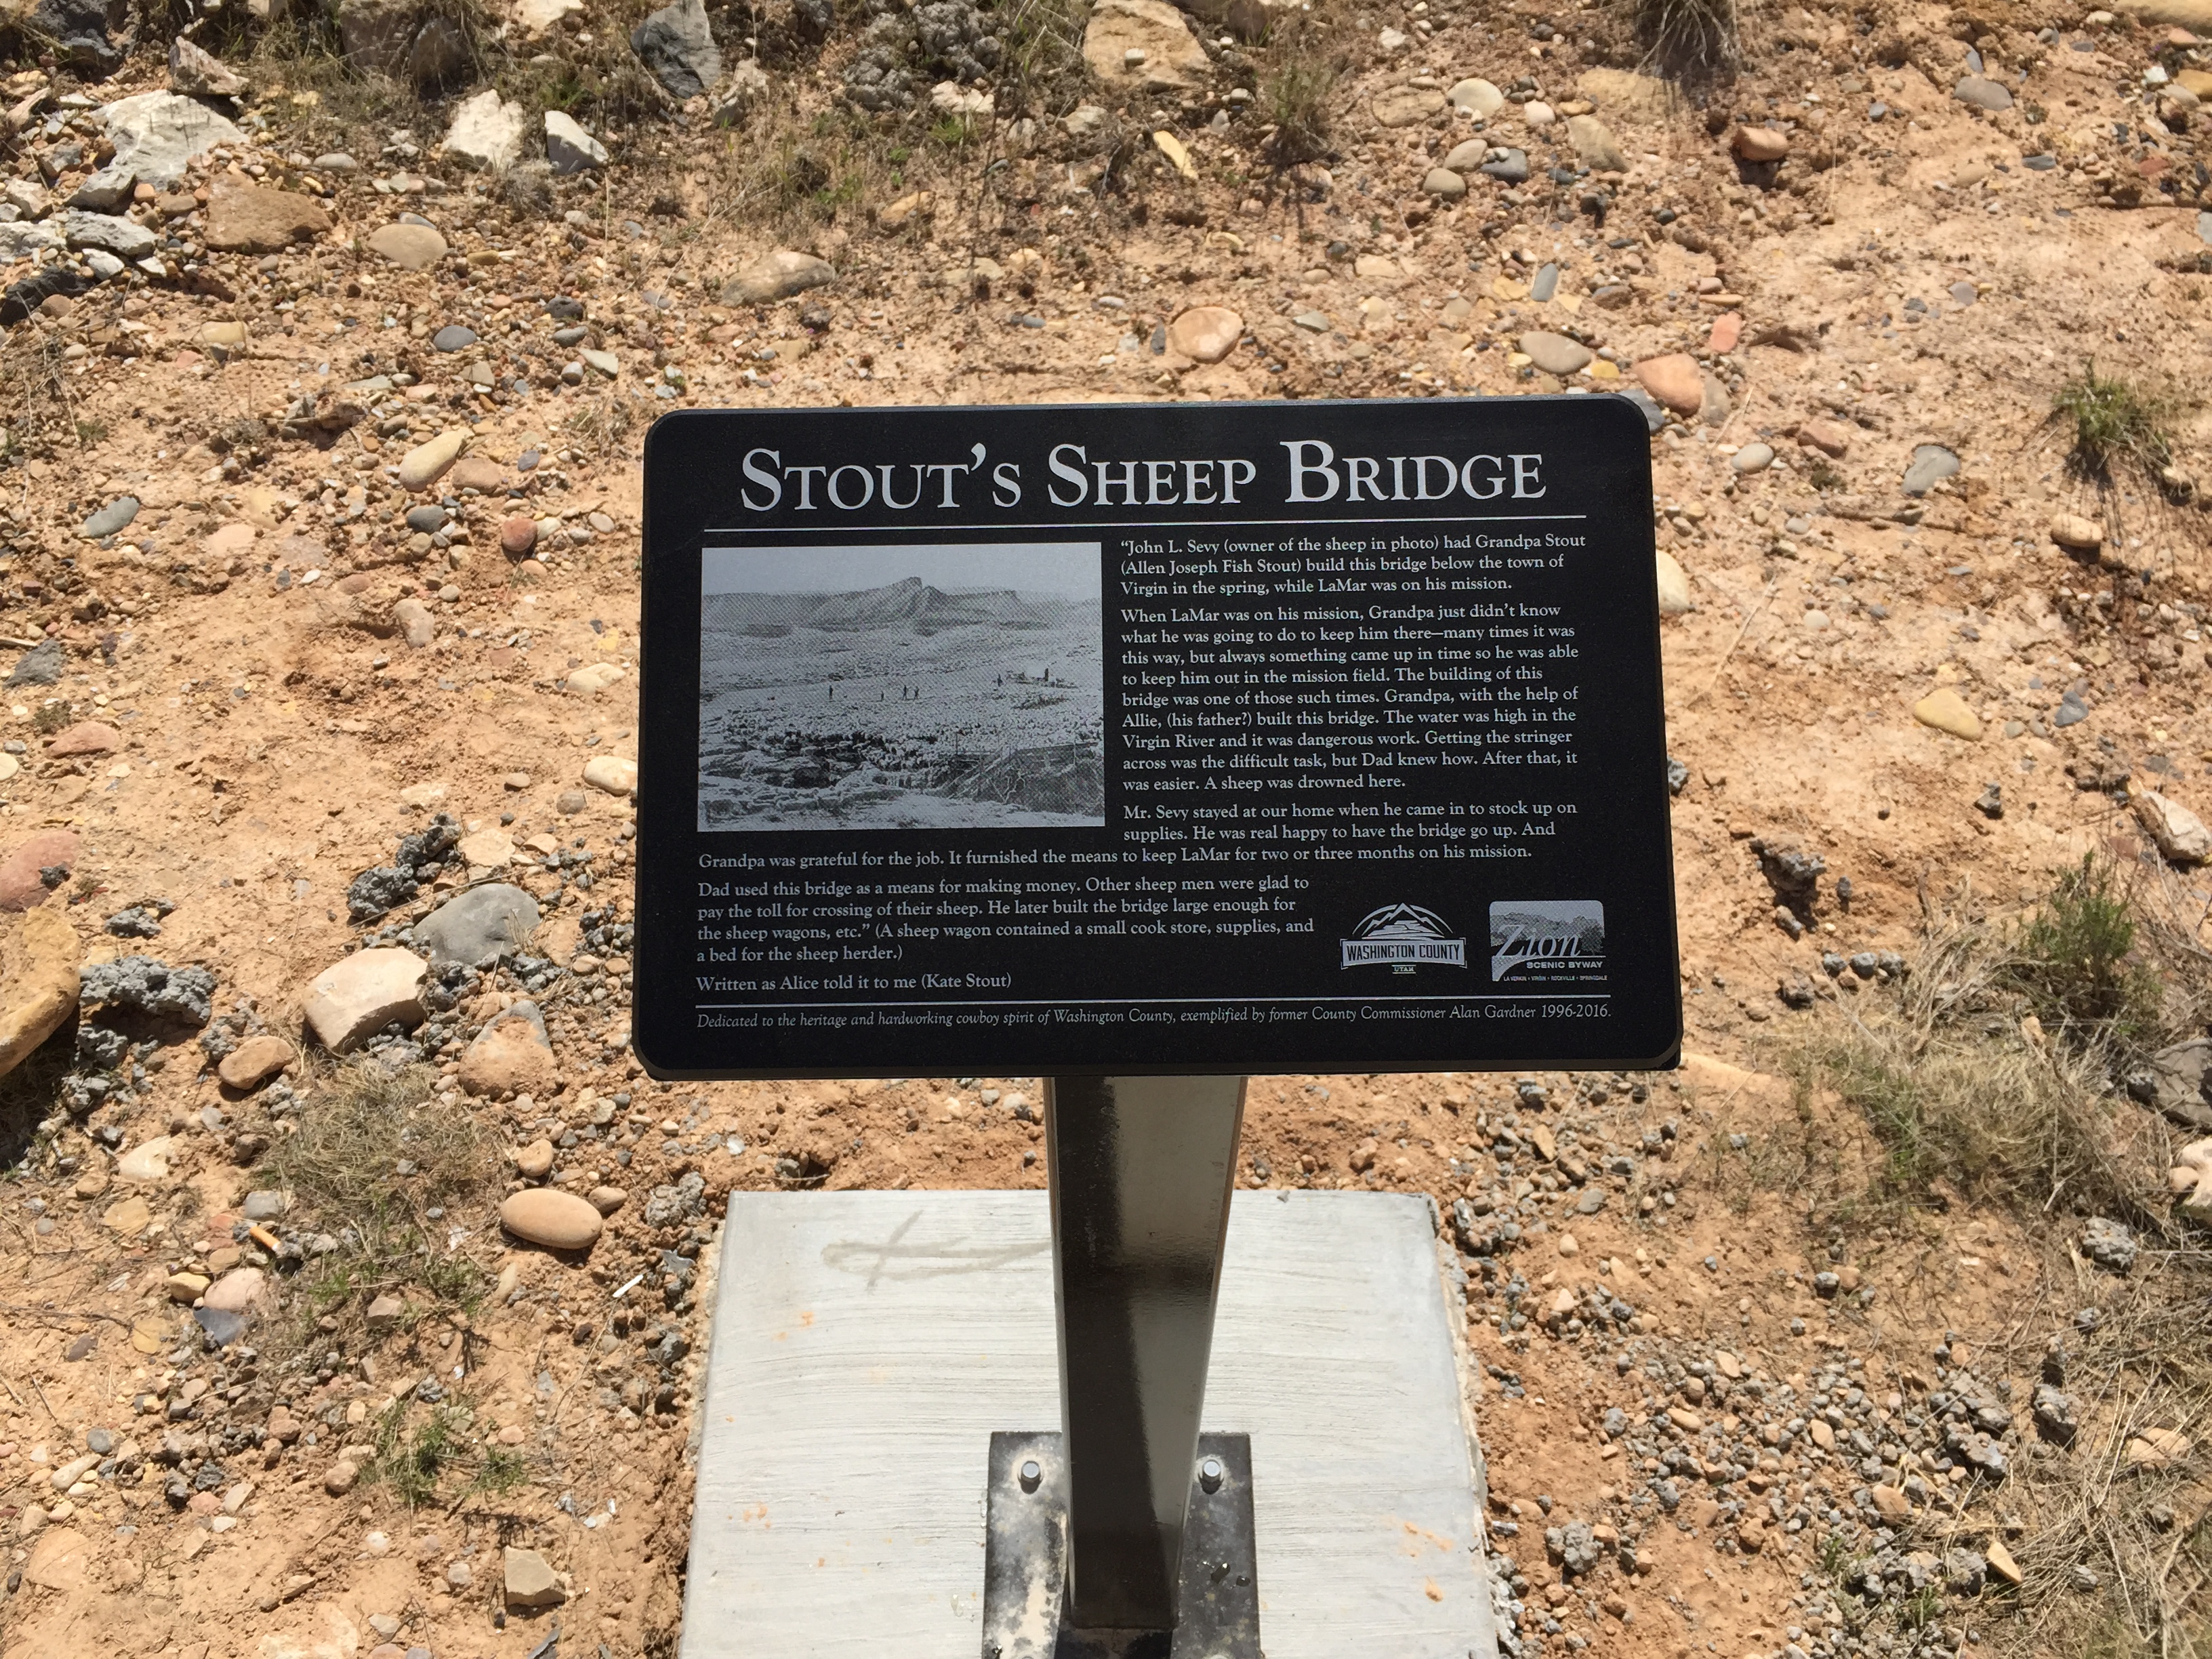 The Stout's Sheep Bridge plaque